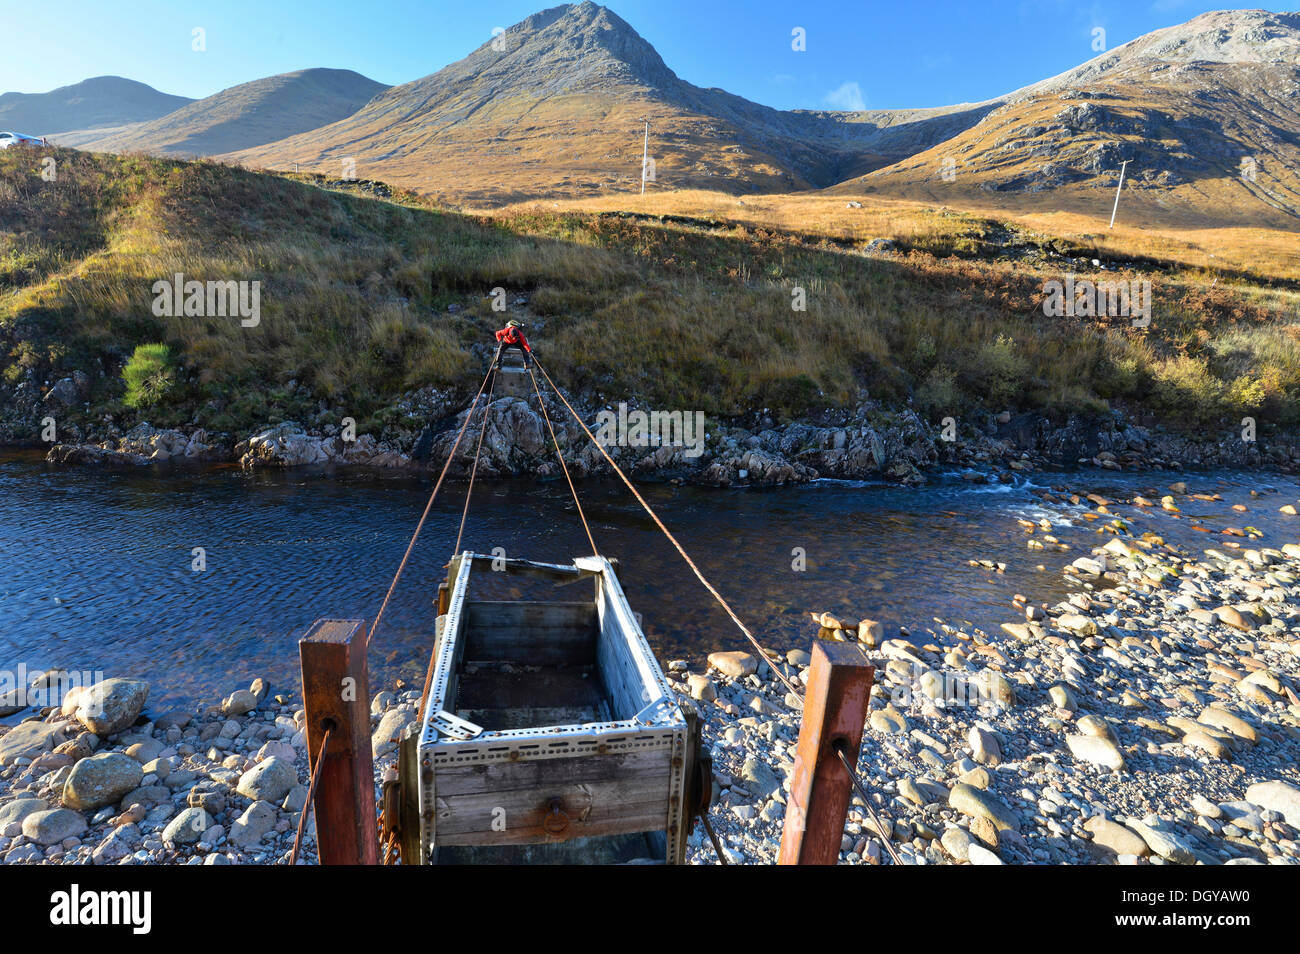 Escursionista attraversando il fiume Etive attraverso un avventuroso cavo in acciaio ponte, autunno nella valle di Glen Etive, Highlands scozzesi Foto Stock